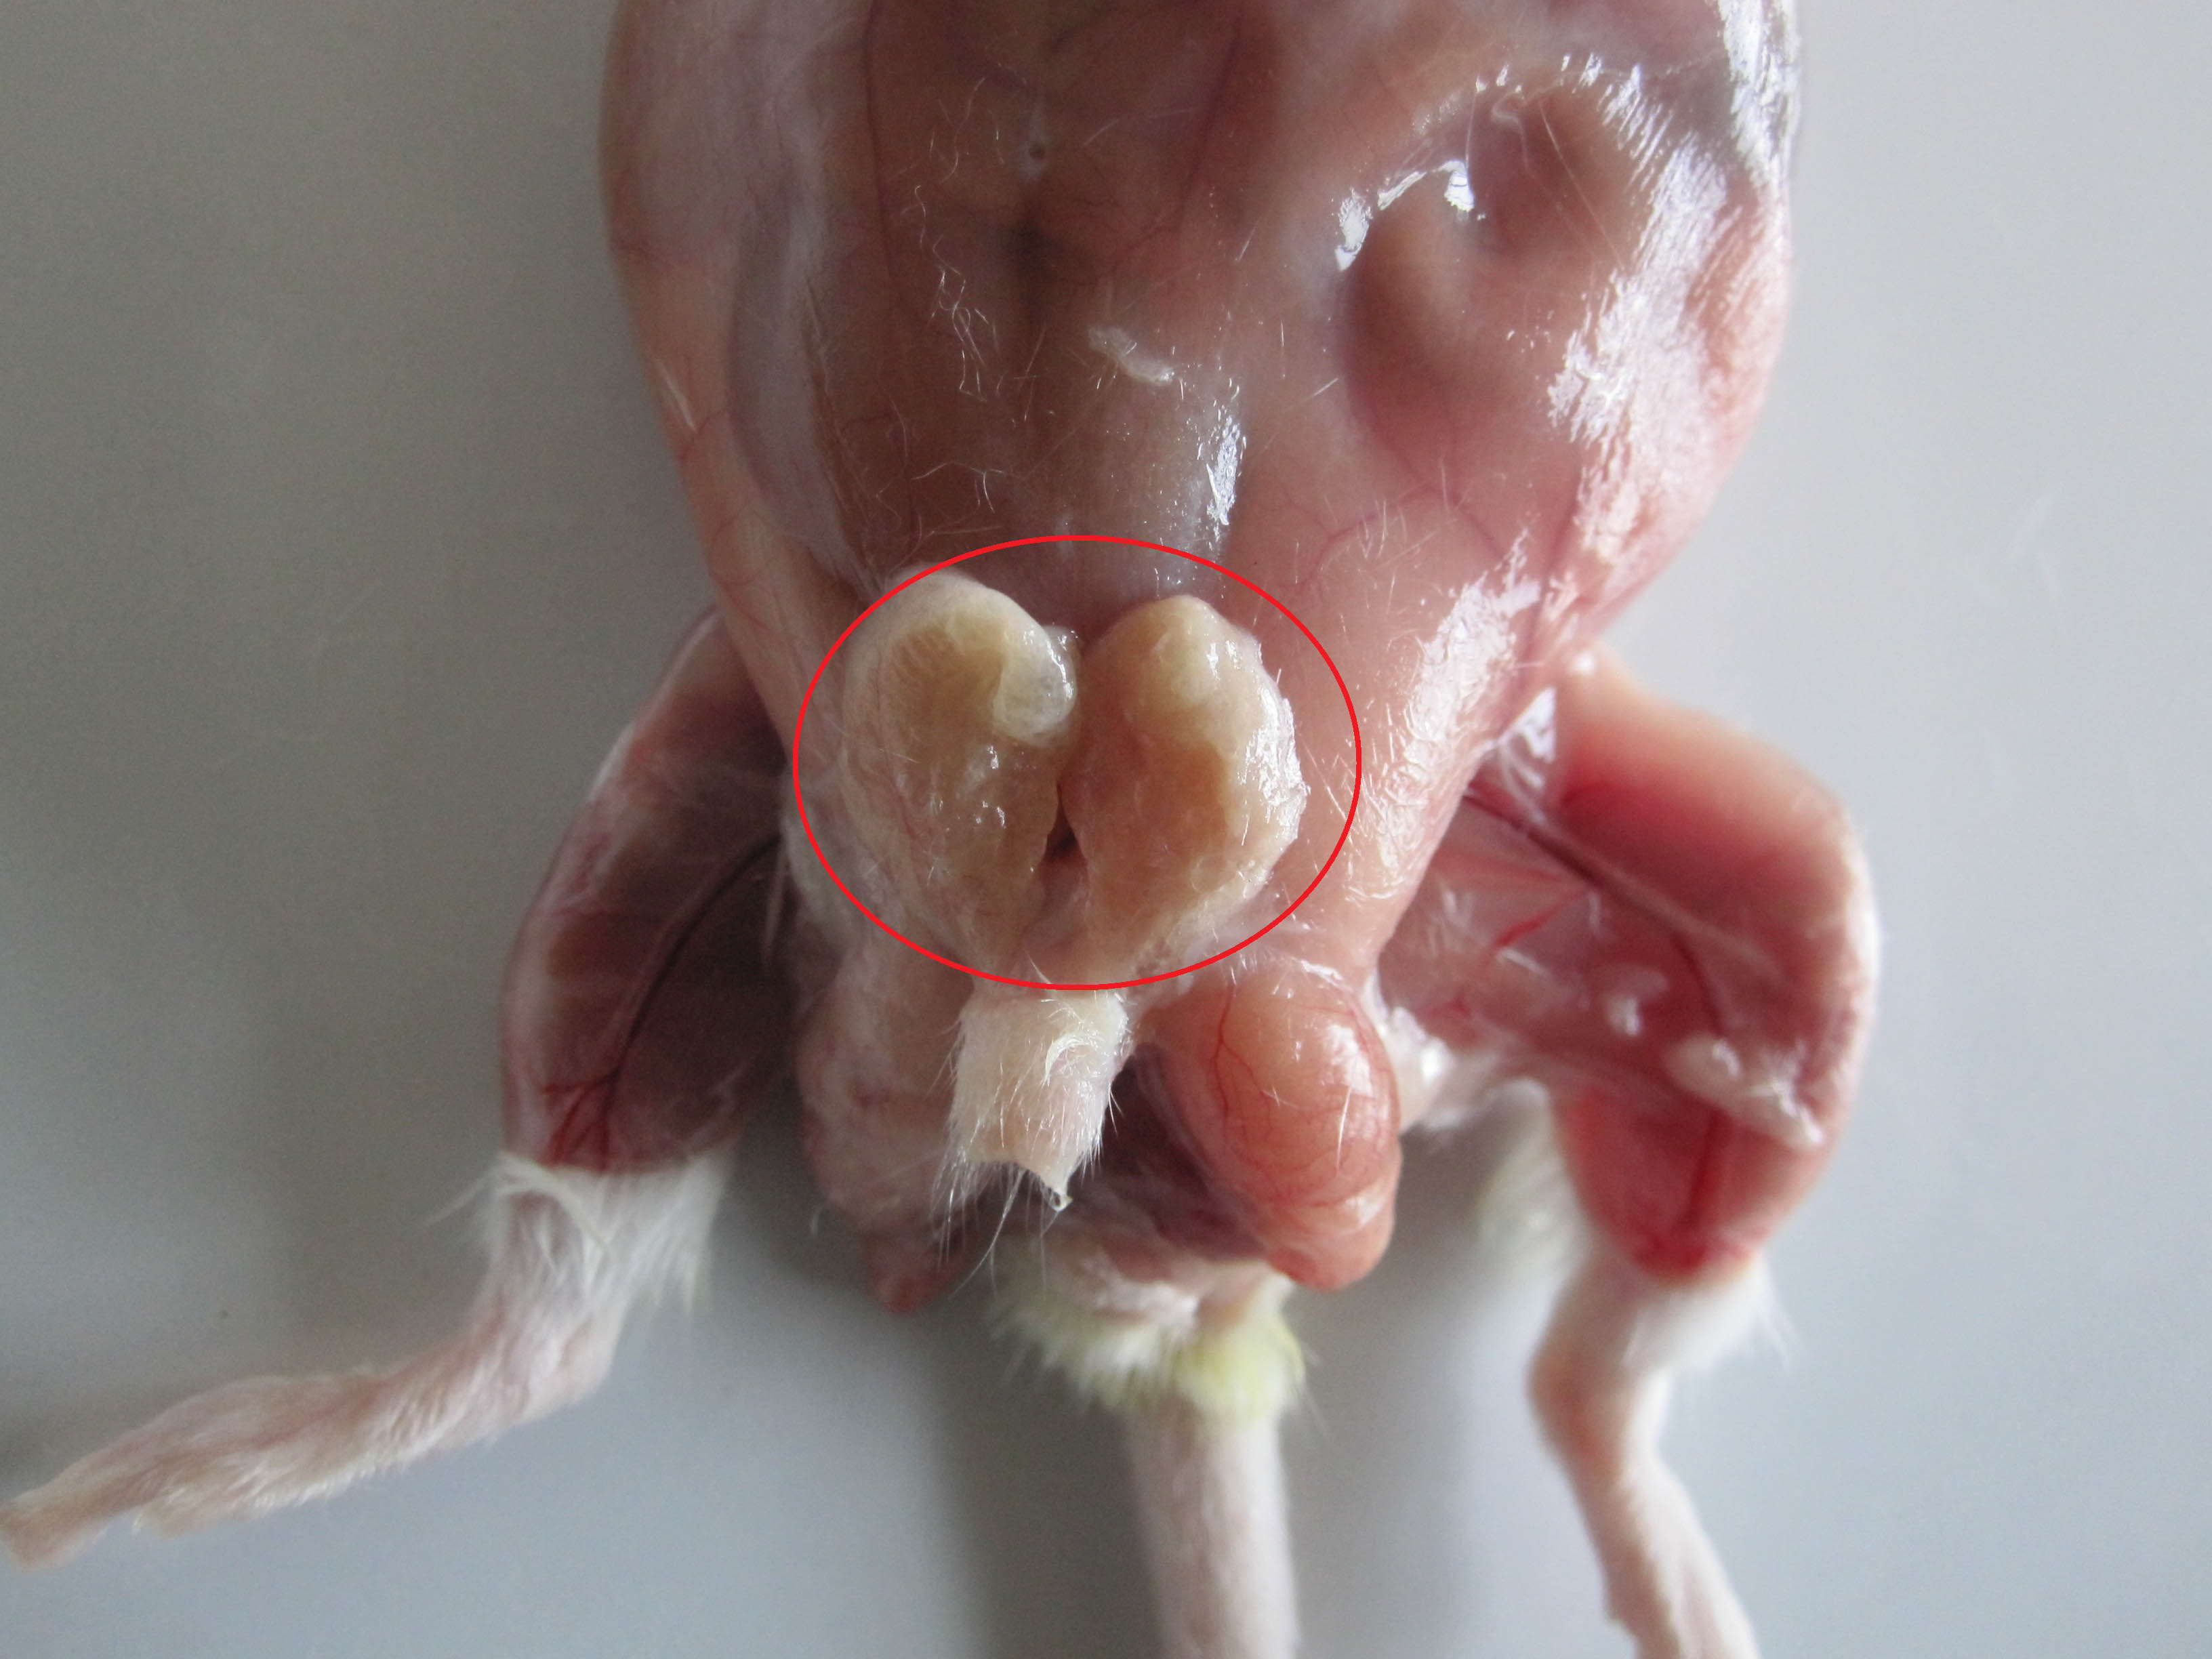 小鼠膀胱解剖图图片